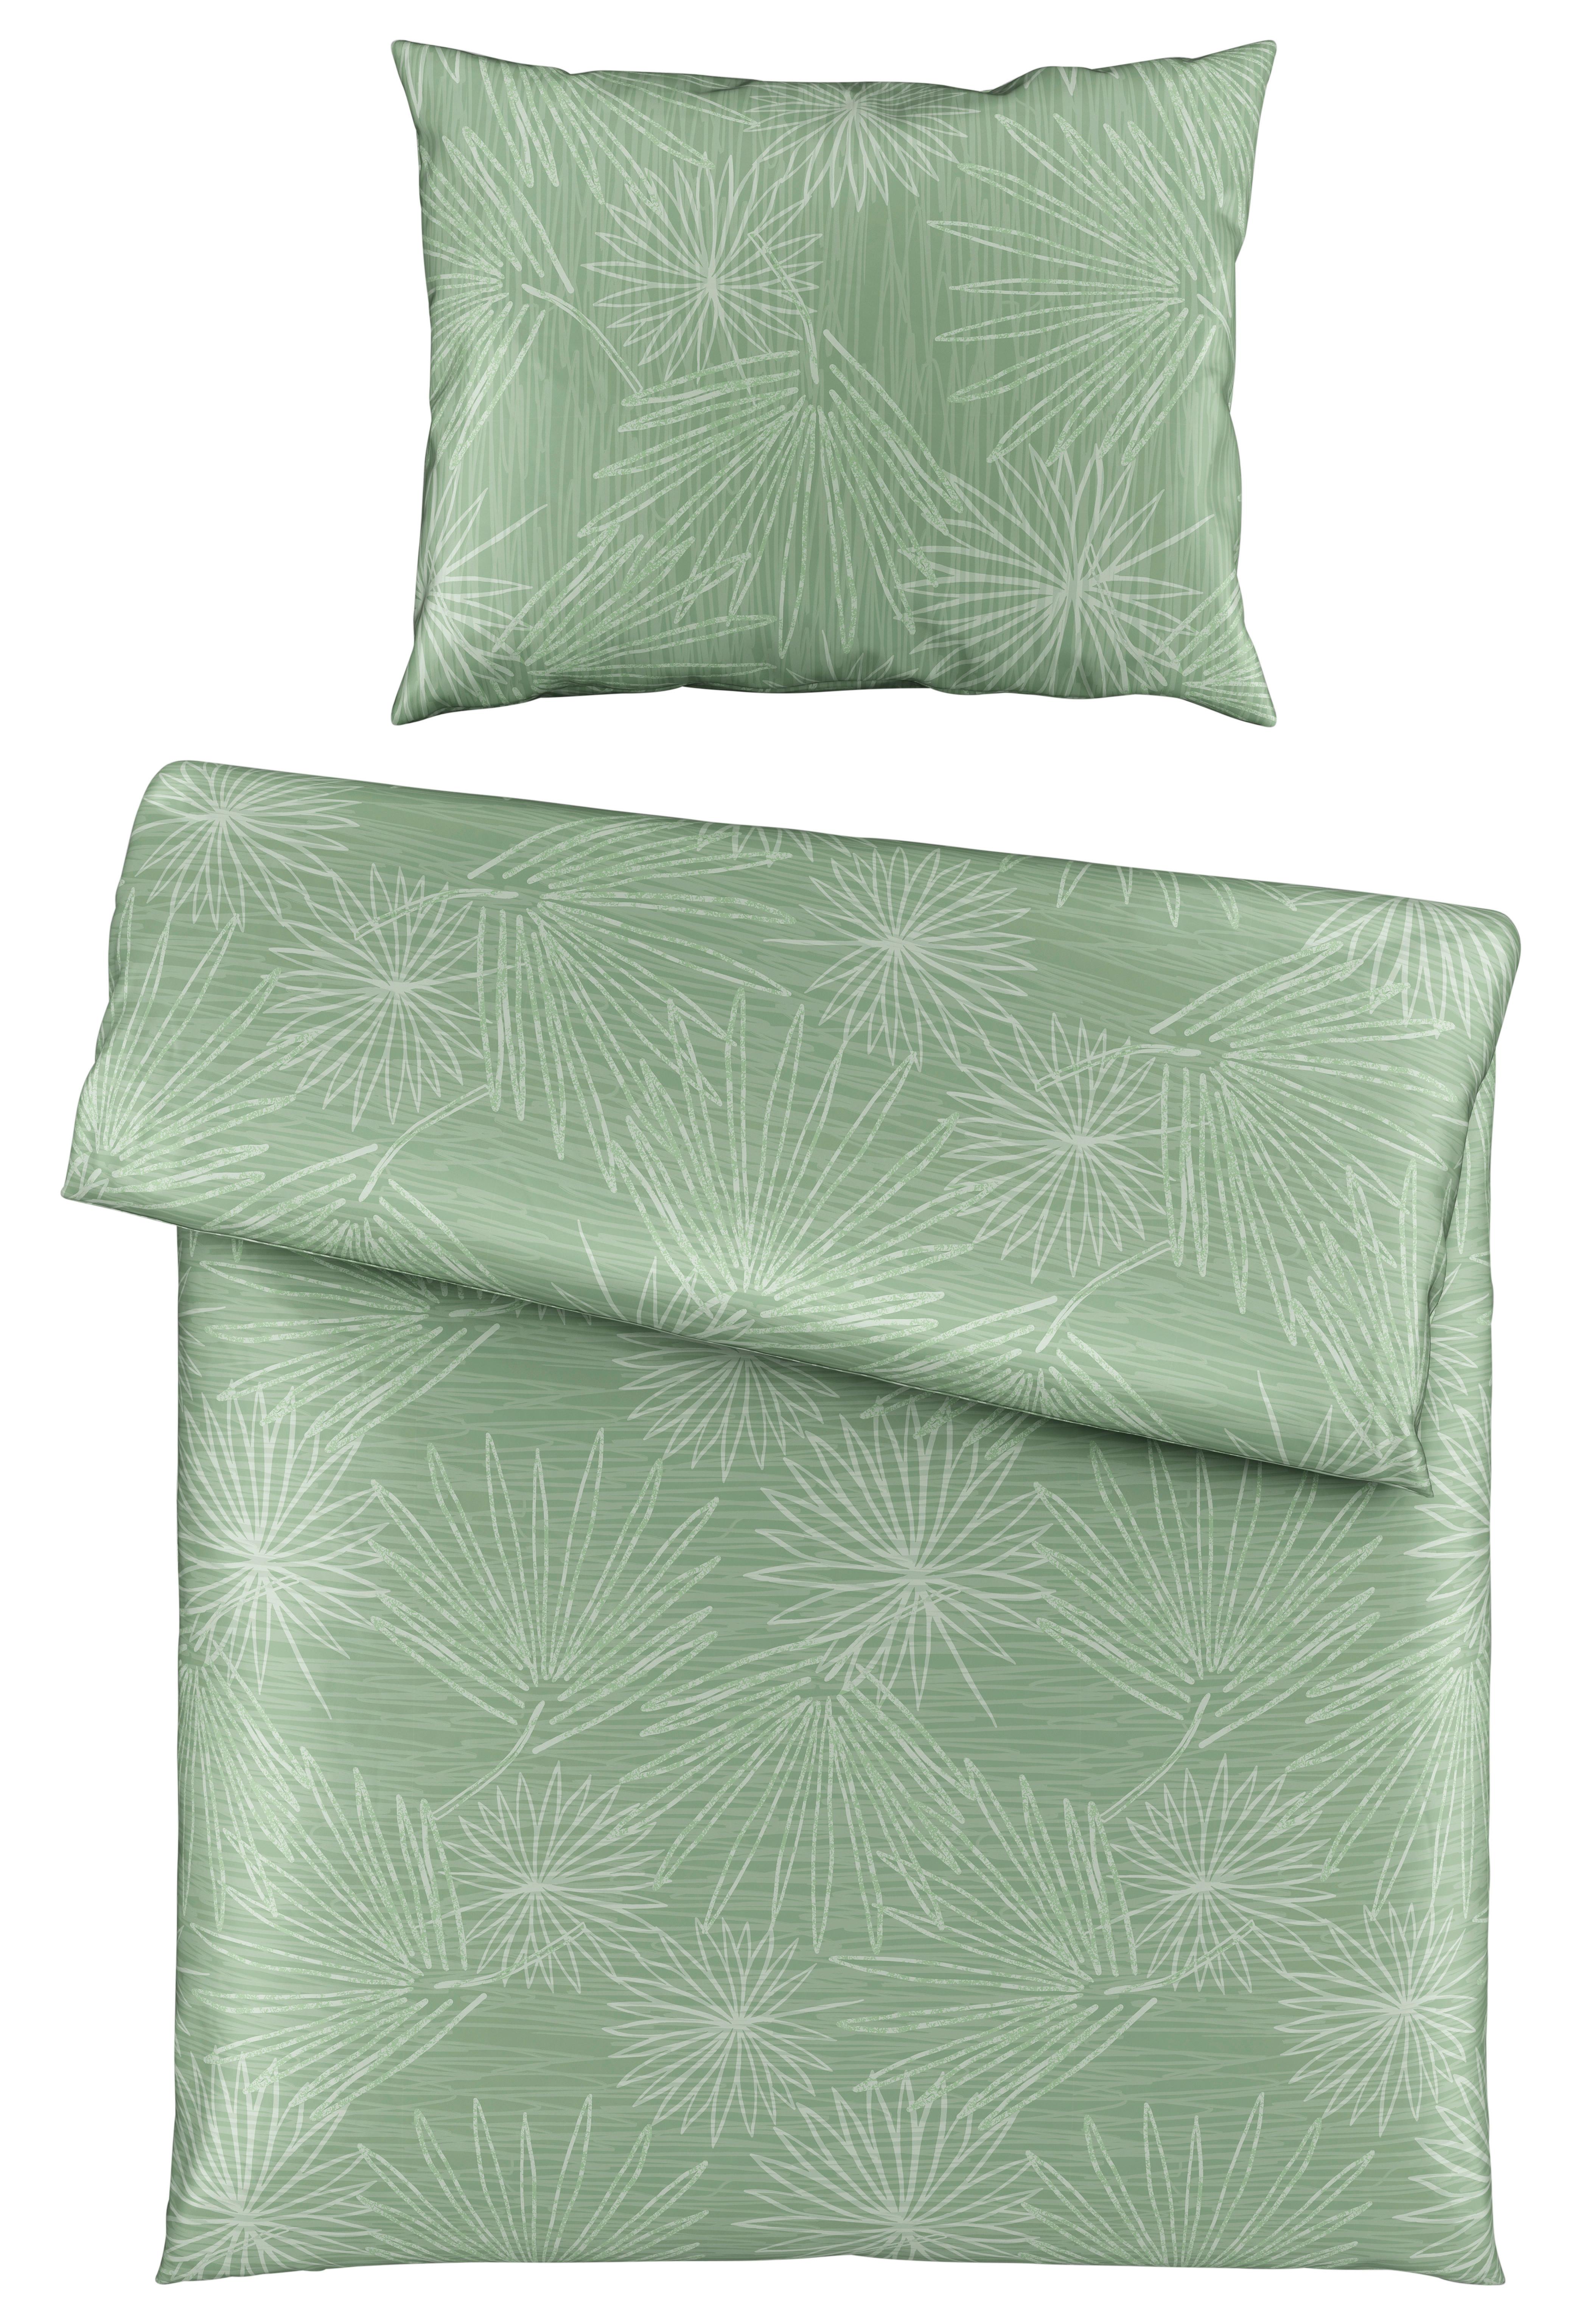 Posteľná Bielizeň Cora, 140/200cm, Zelená - zelená, Konvenčný, textil (140/200cm) - Premium Living